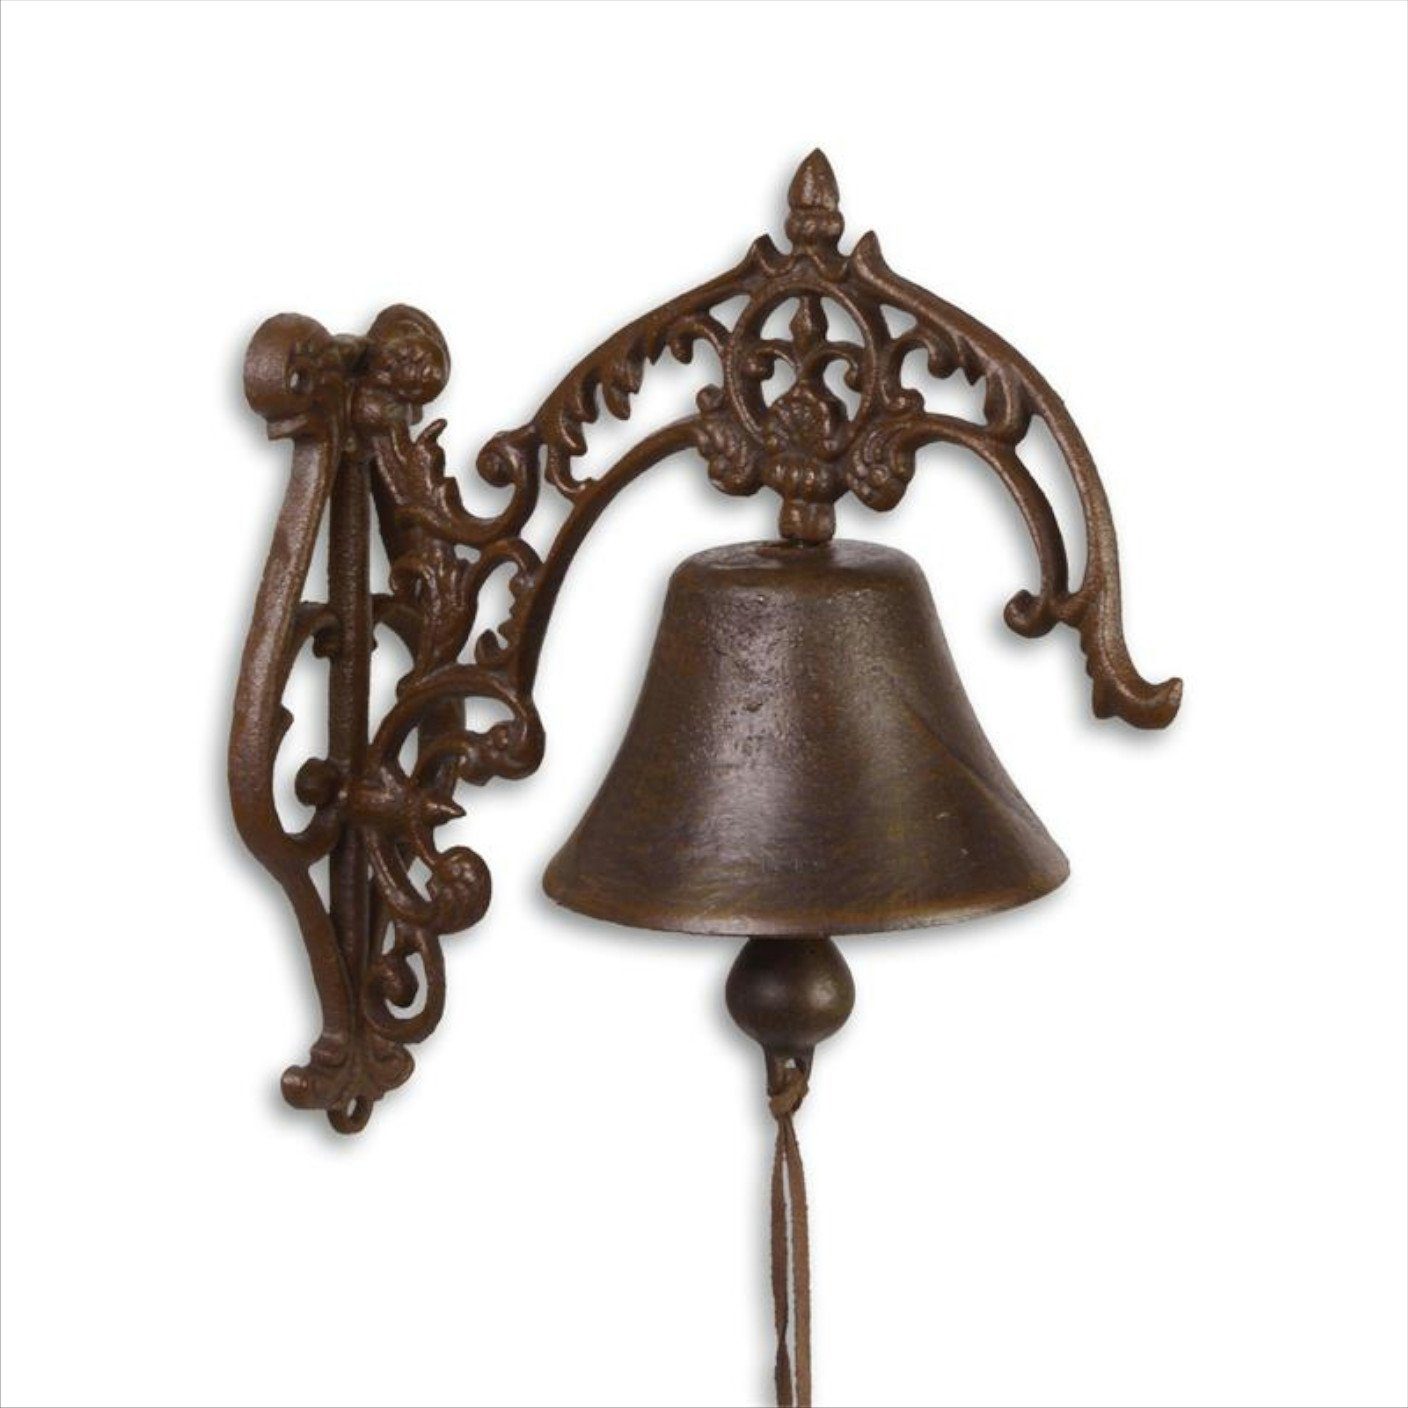 Moritz Gartenfigur Türglocke Glocke Glocke Gong Wandglocke mit Landhaus Gusseisen groß, Klingel Ornamenten Antik